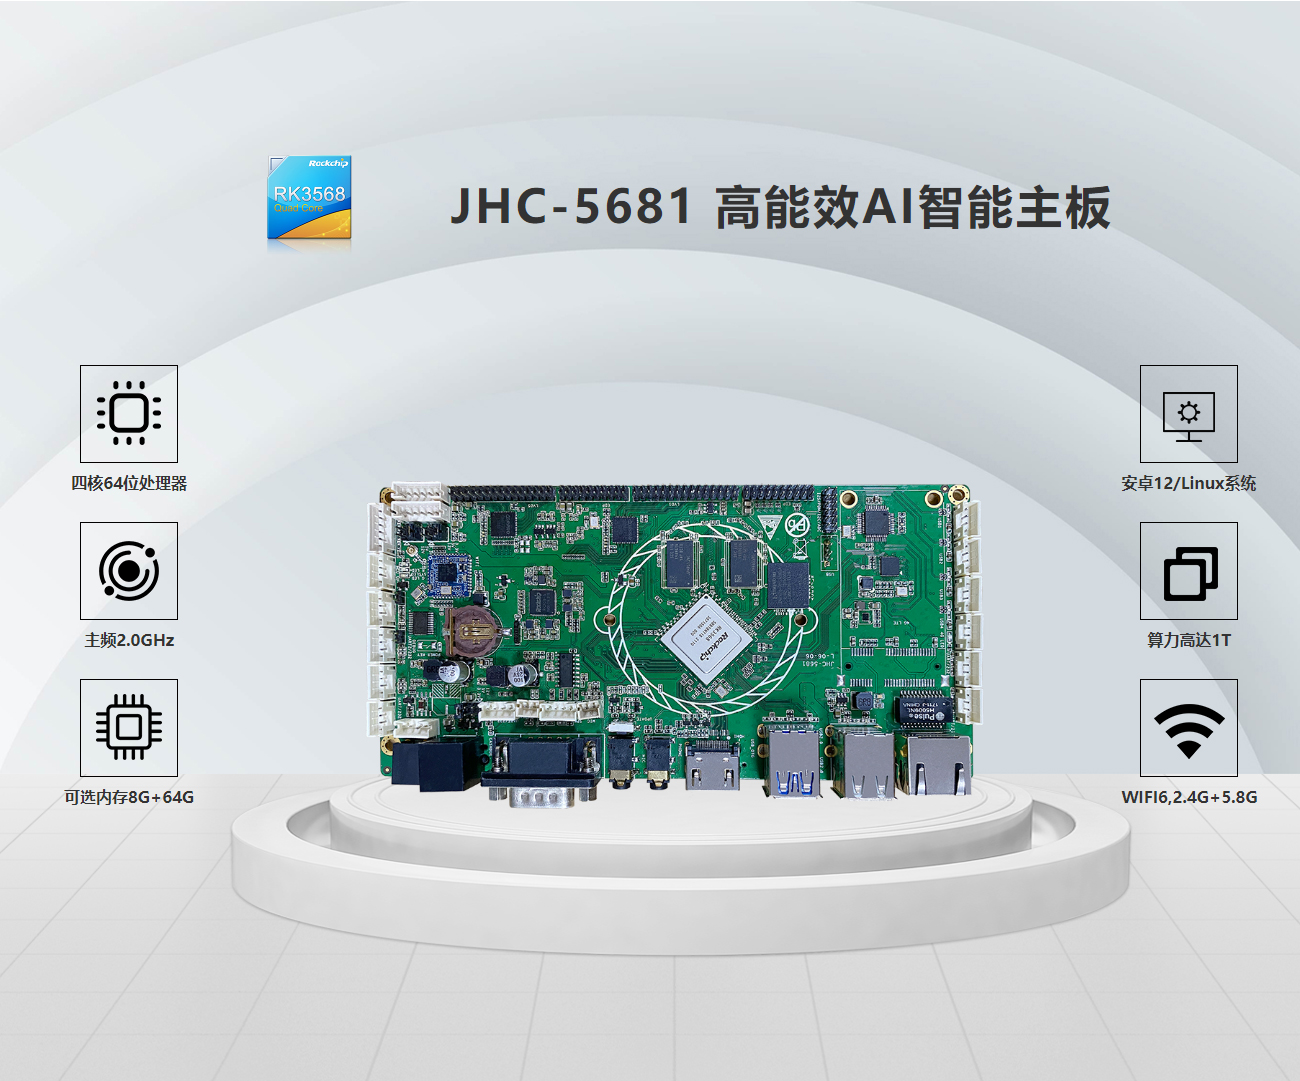 JHC-5681 高能效AI智能主板